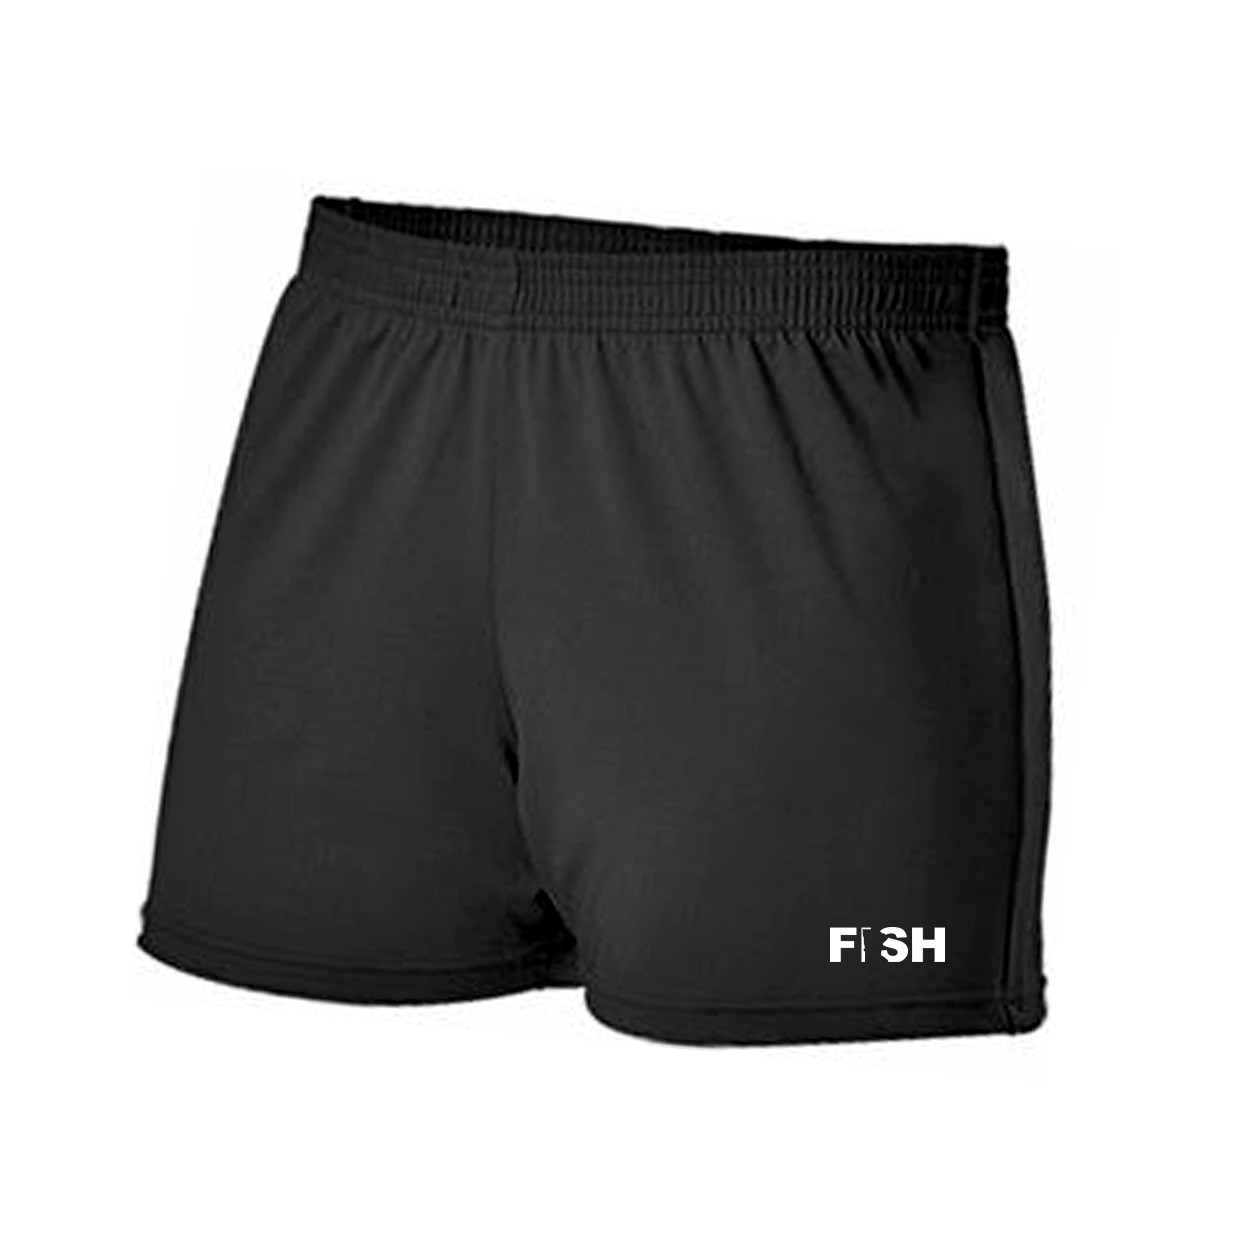 Fish Minnesota Classic Women's Cheer Shorts Black (White Logo)